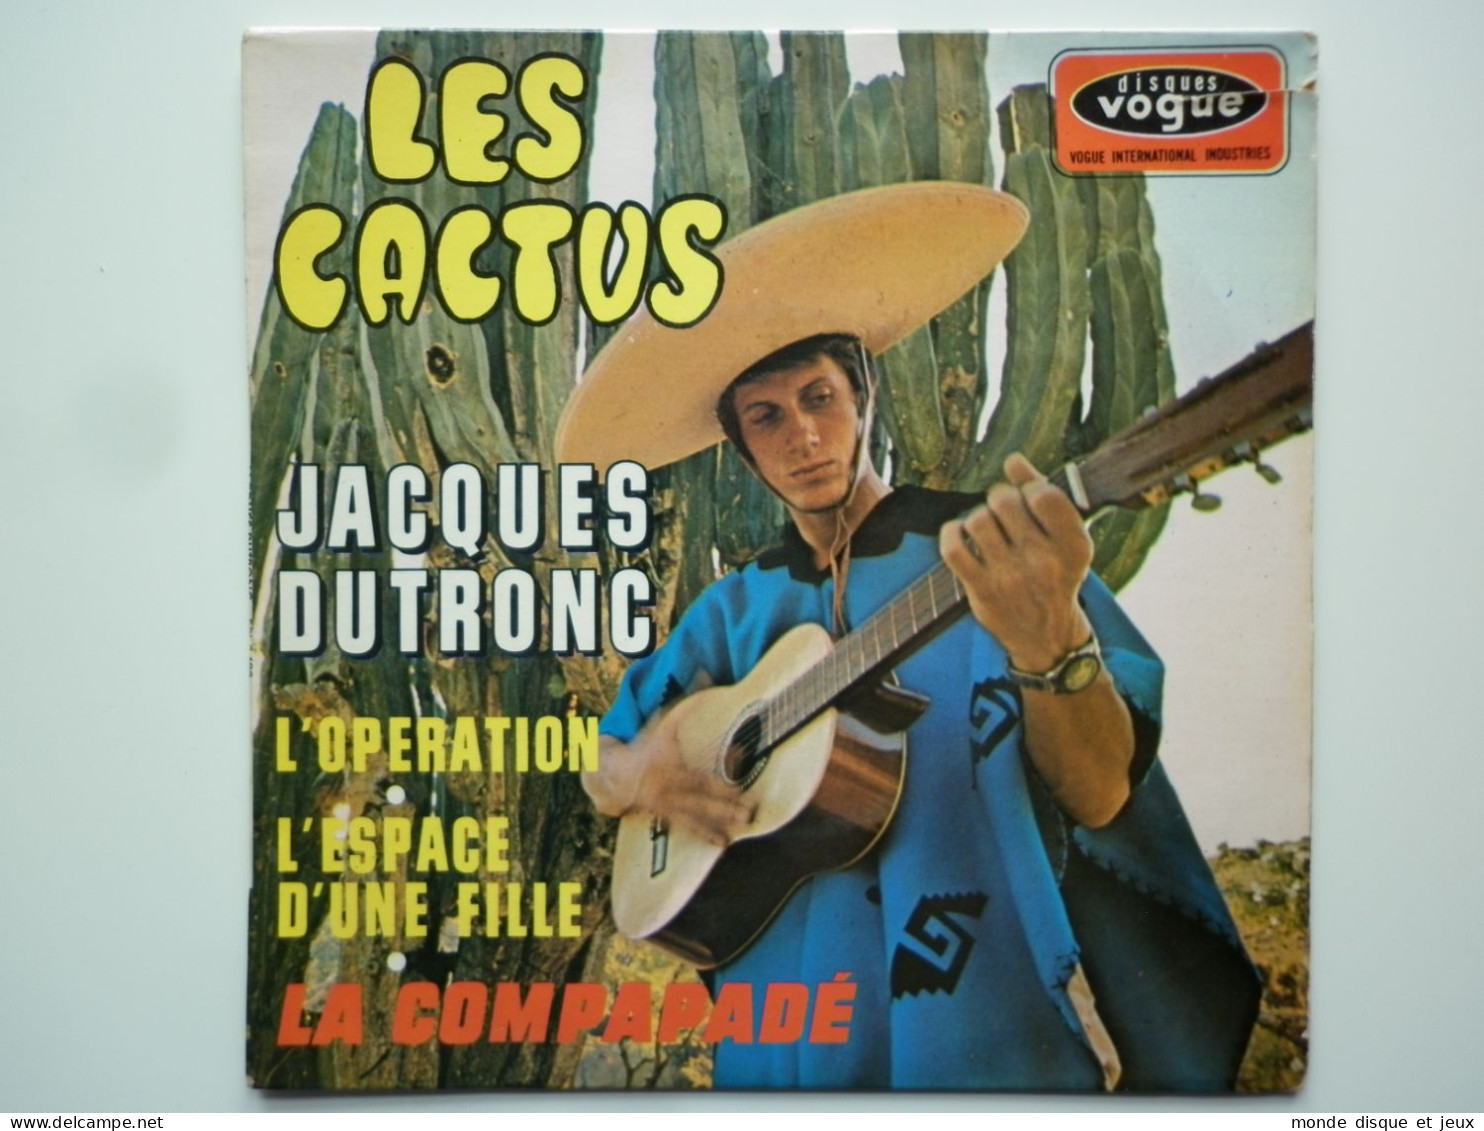 Jacques Dutronc 45Tours EP Vinyle Les Cactus - 45 G - Maxi-Single